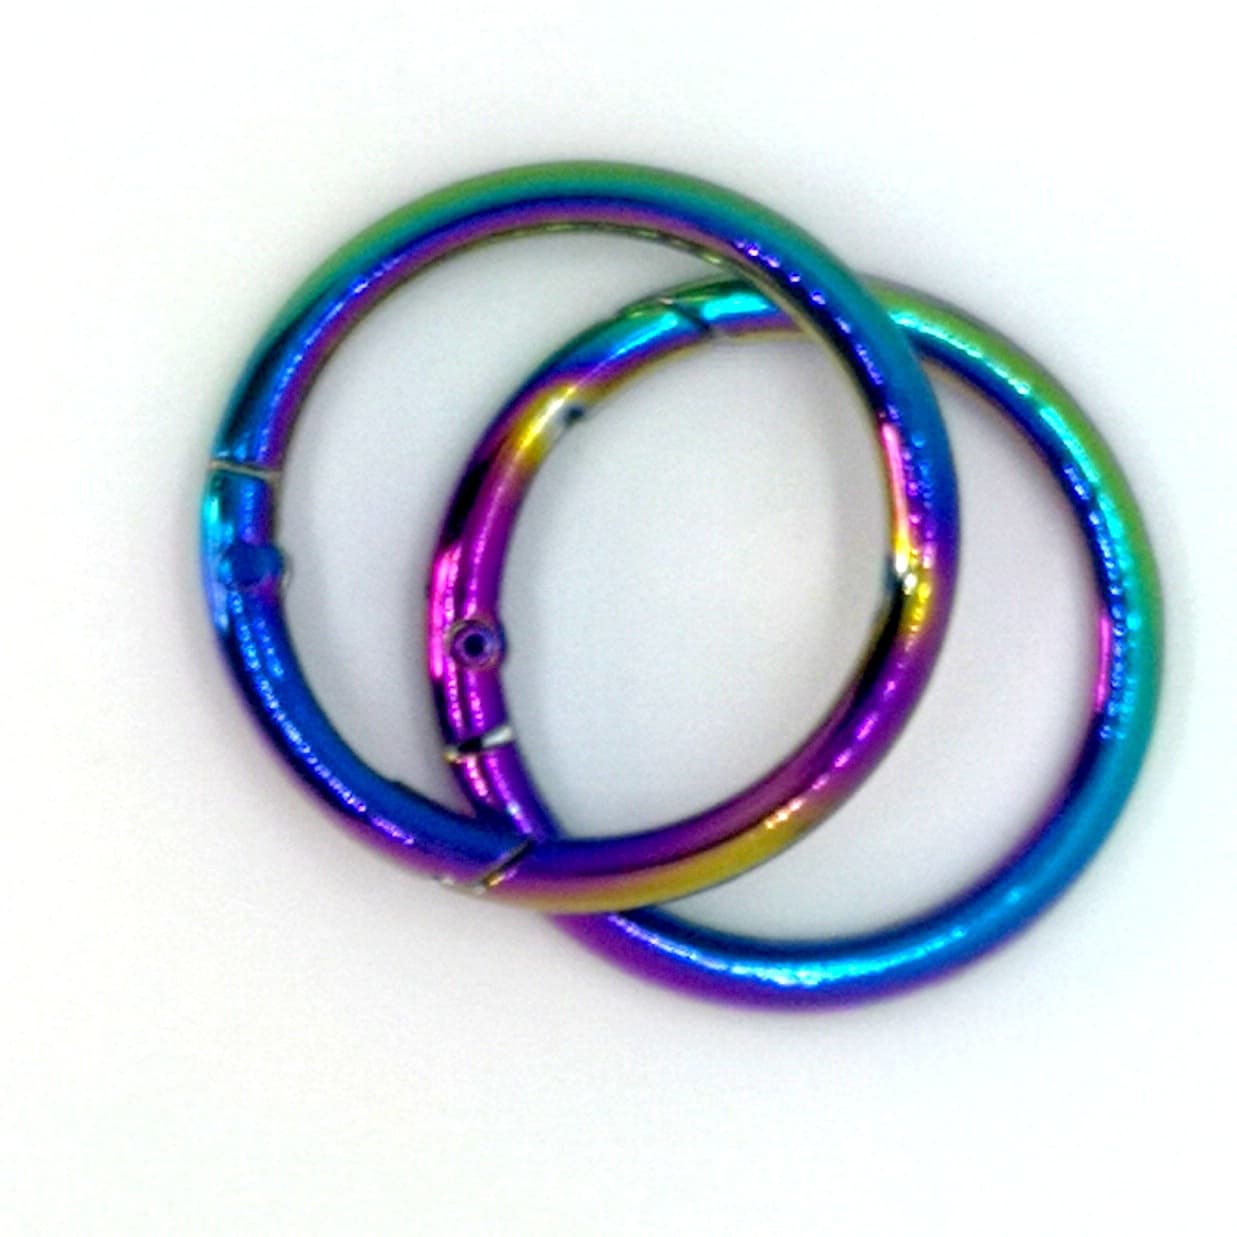 1.25" Rainbow Gated O-Ring set of 2